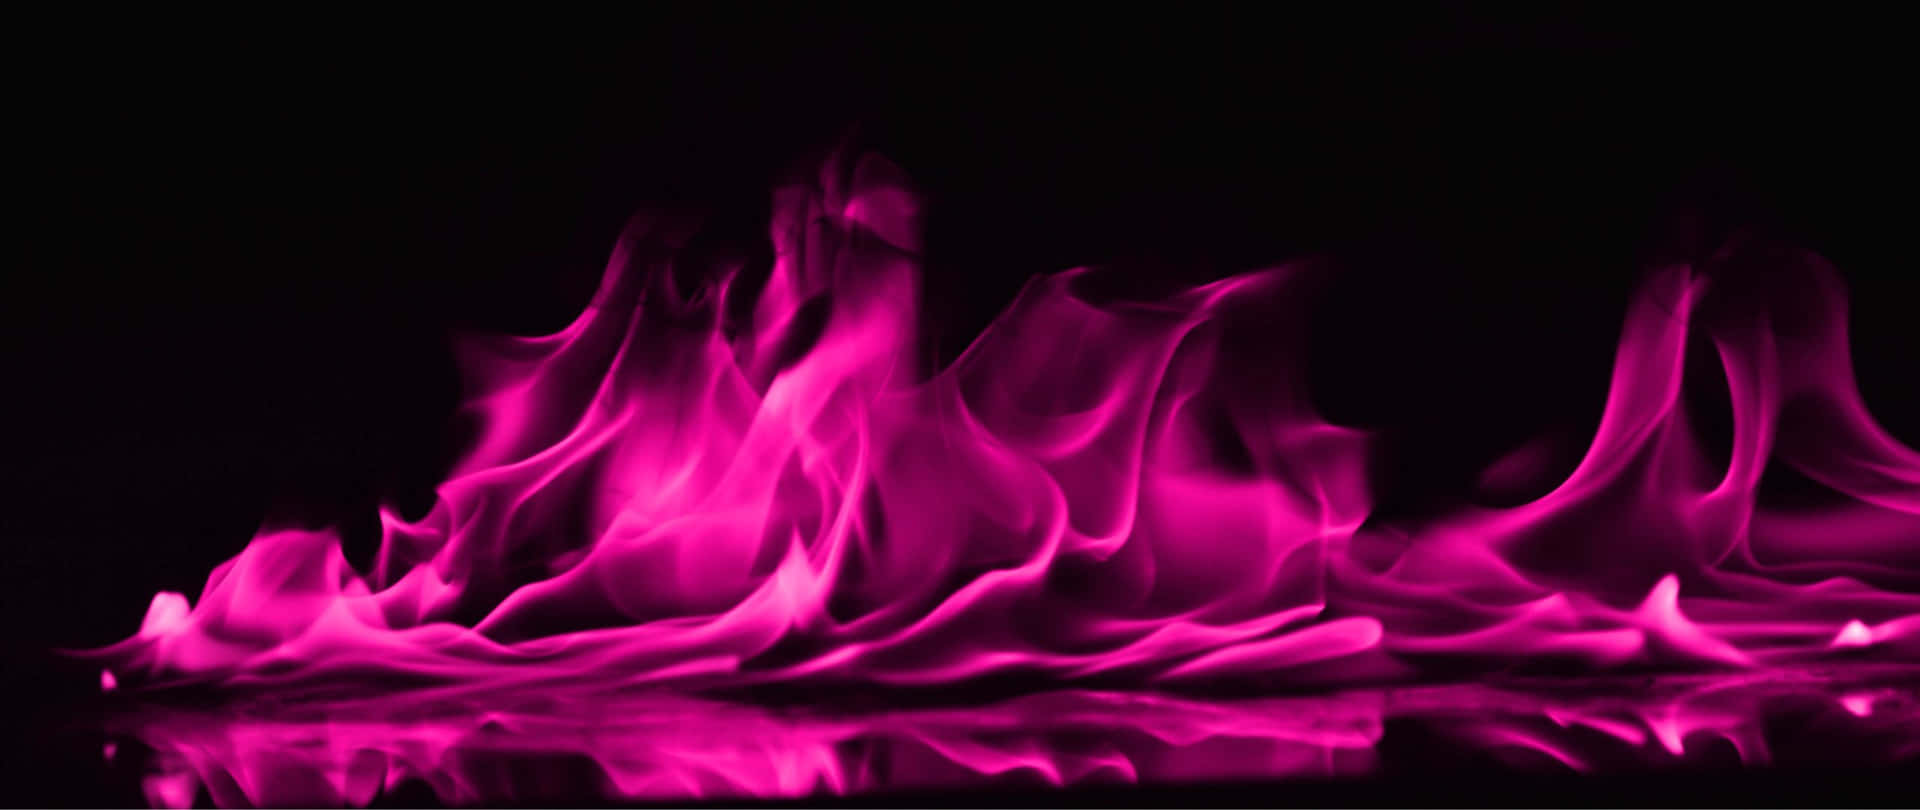 Einschwarzer Hintergrund Mit Rosa Flammen.